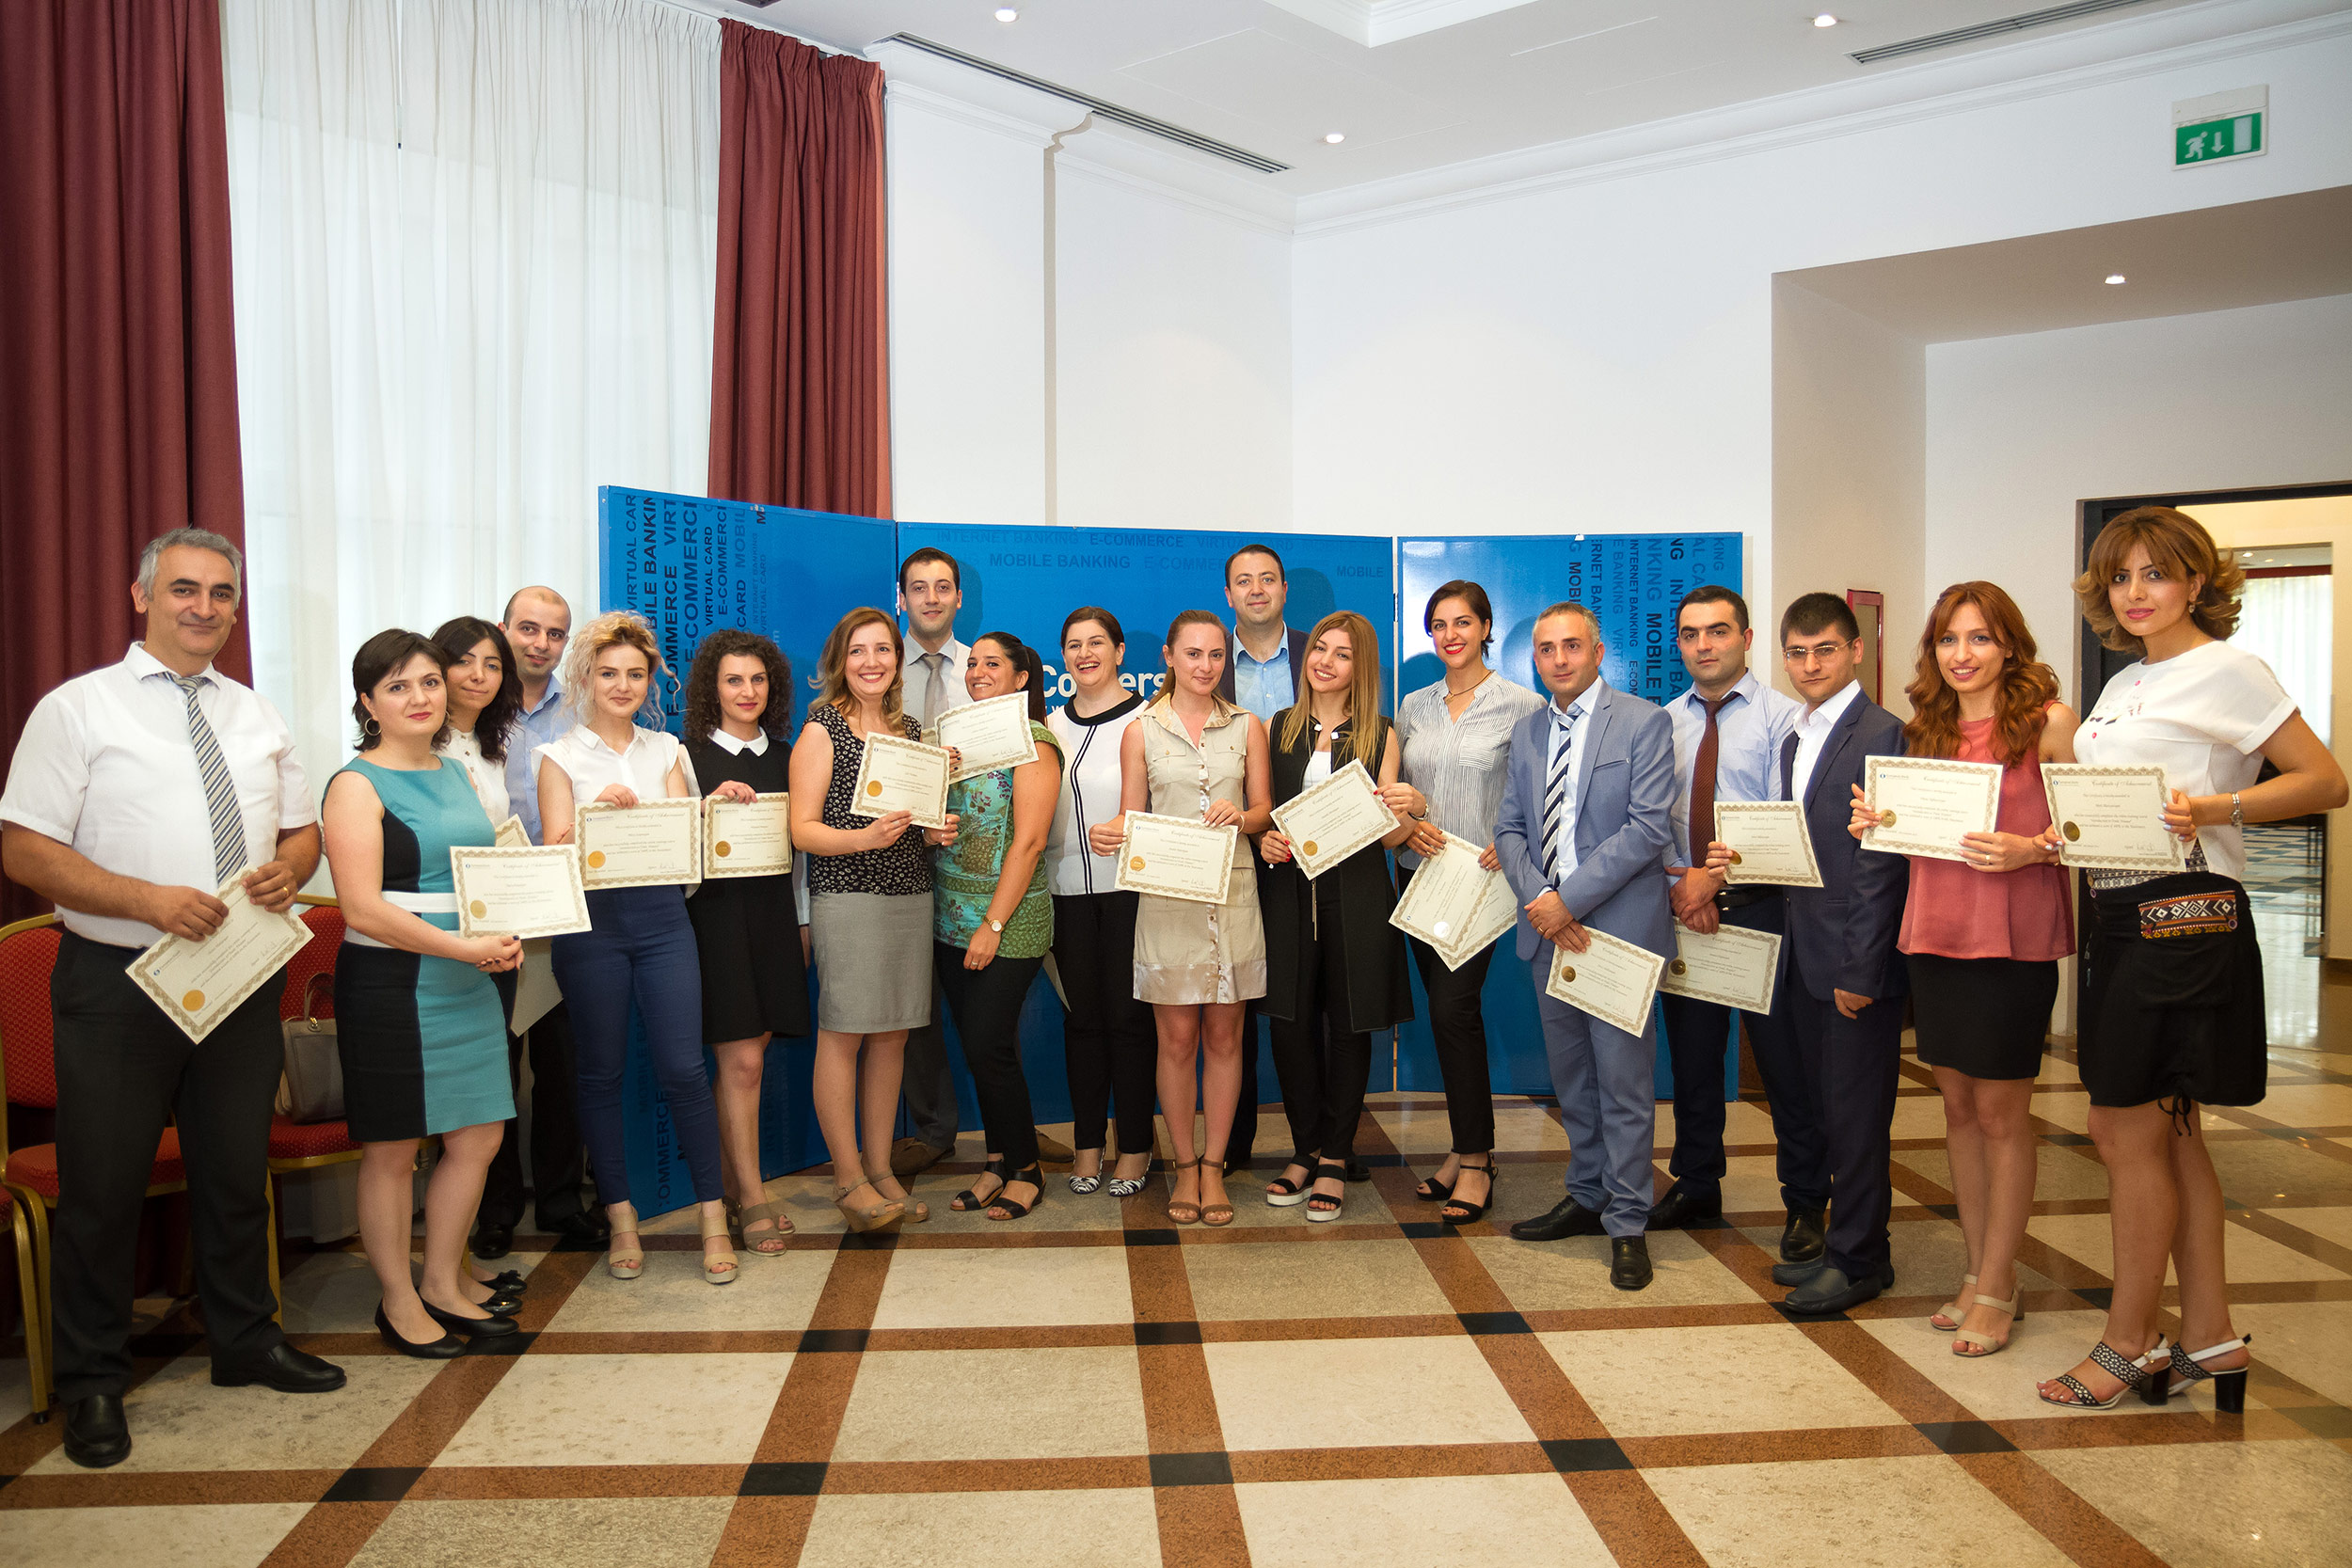 Կոնվերս Բանկի աշխատակիցների թիմն արժանացել է Եվրոպական Բանկի «Trade Facilitation Program Academic Excellence Award» միջազգային մրցանակին